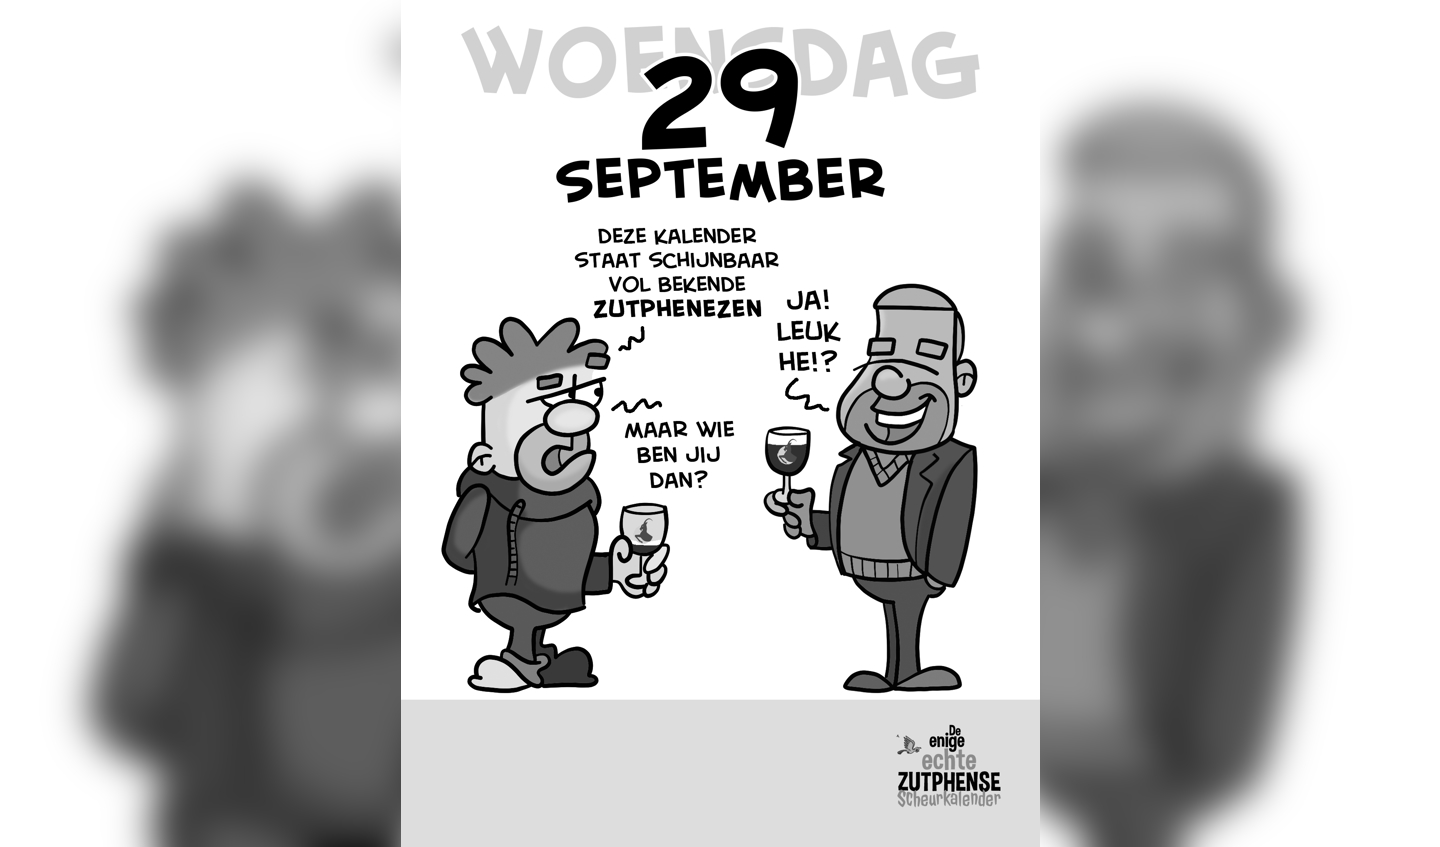 De kalender barst van de bekende Zutphenezen... Foto: PR